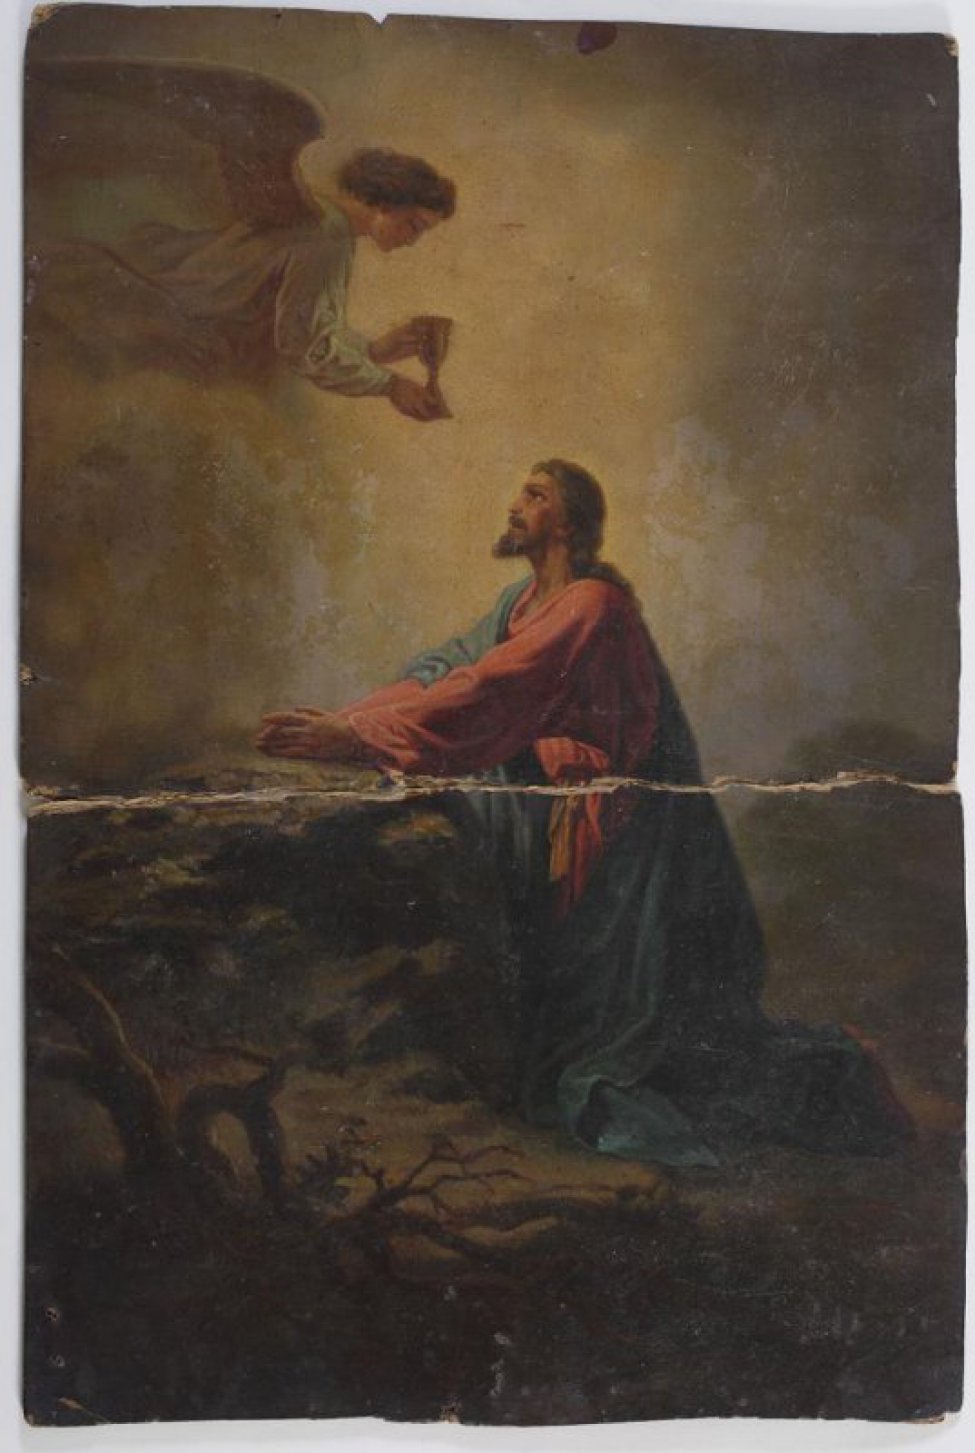 Изображена фигура коленопреклоненного Иисуса Христа, протягивающего вперед руки. К нему слева сверху спускается ангел с чашей.